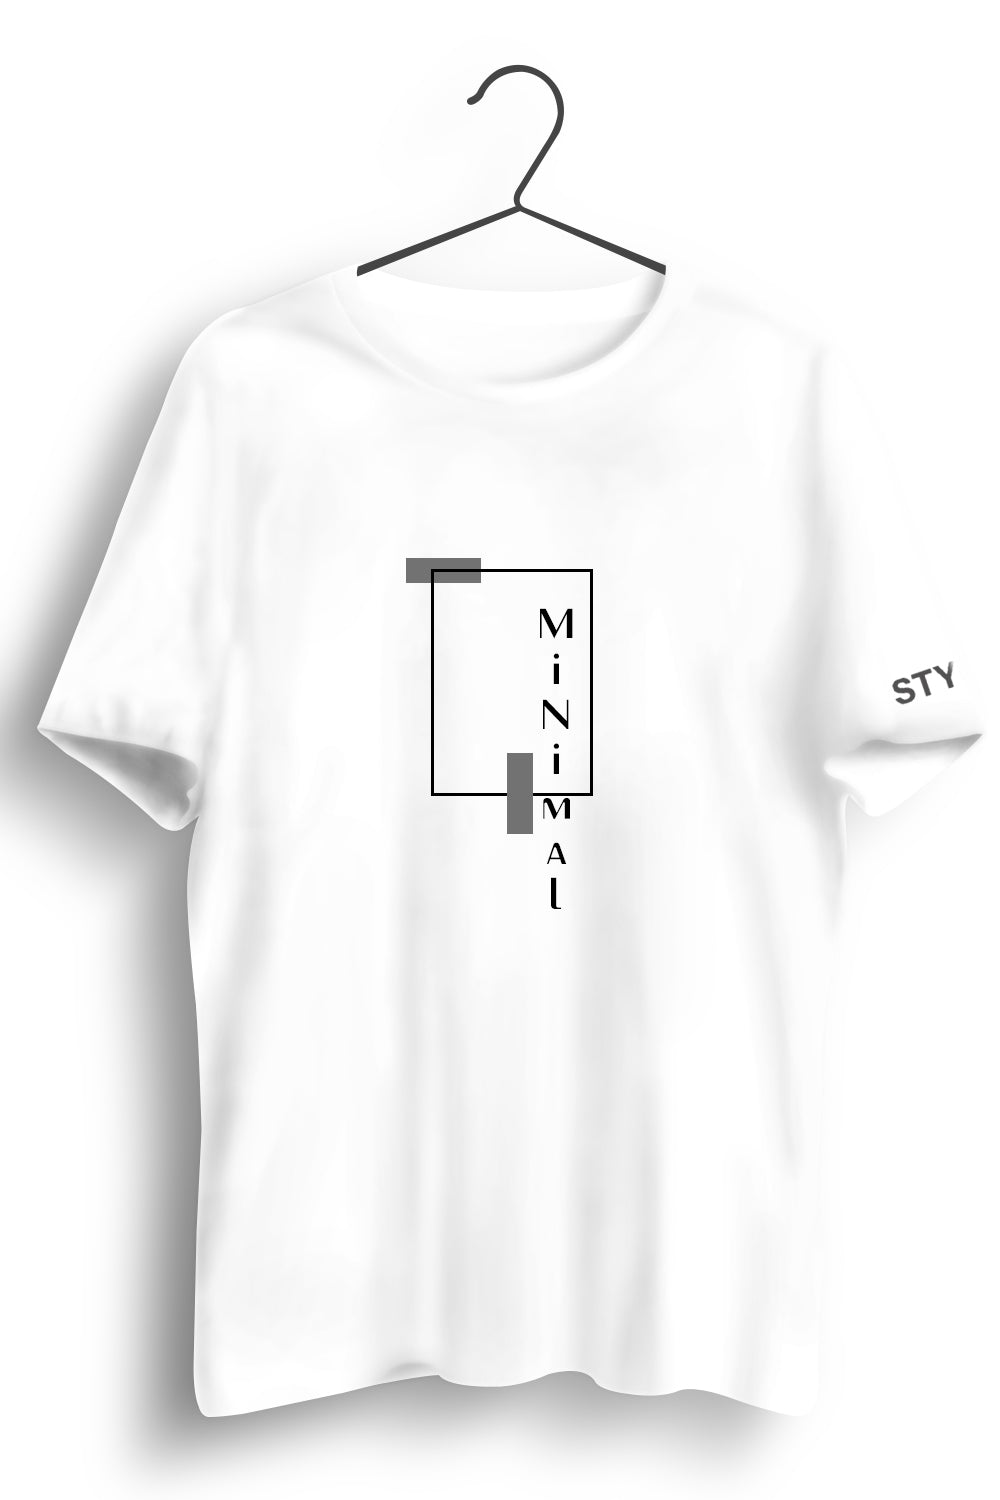 Minimal Graphic Printed White Tshirt